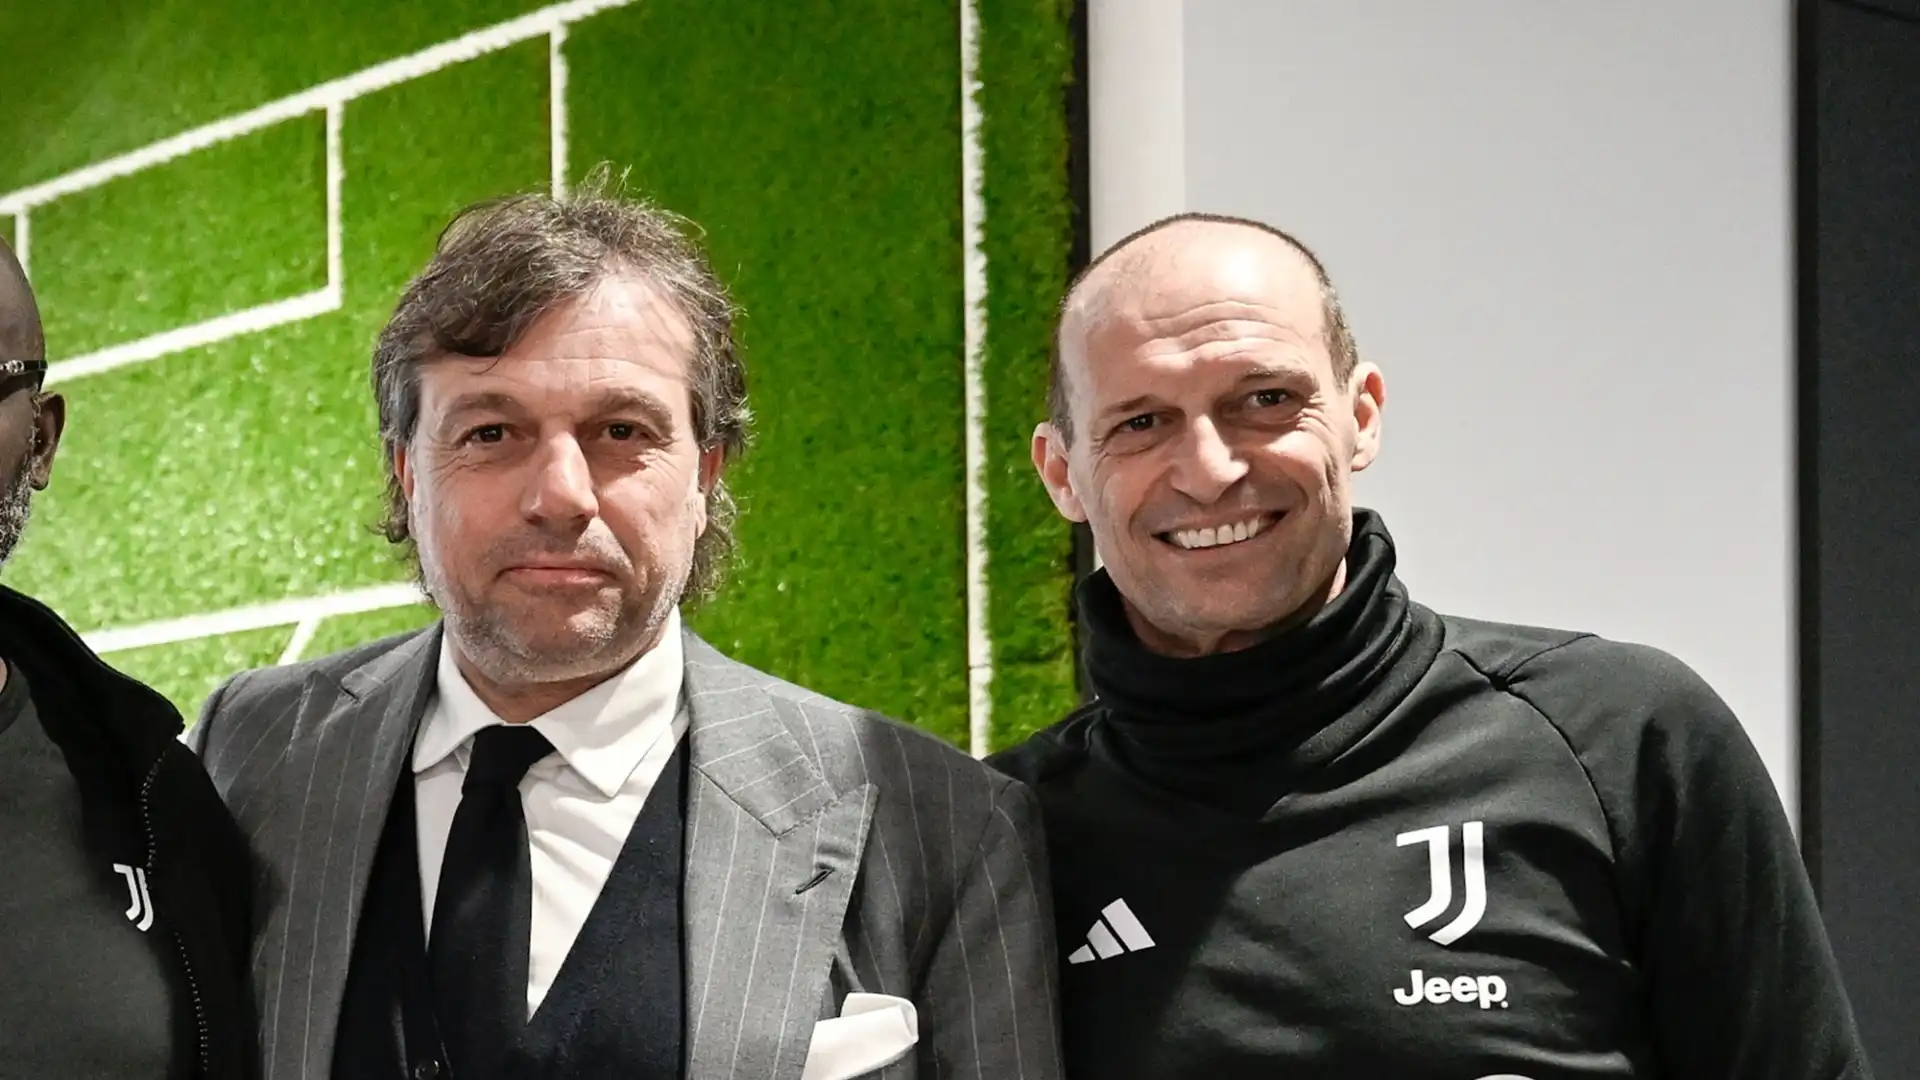 La Juventus progetta la sua rinascita dopo quasi tre anni senza titoli vinti